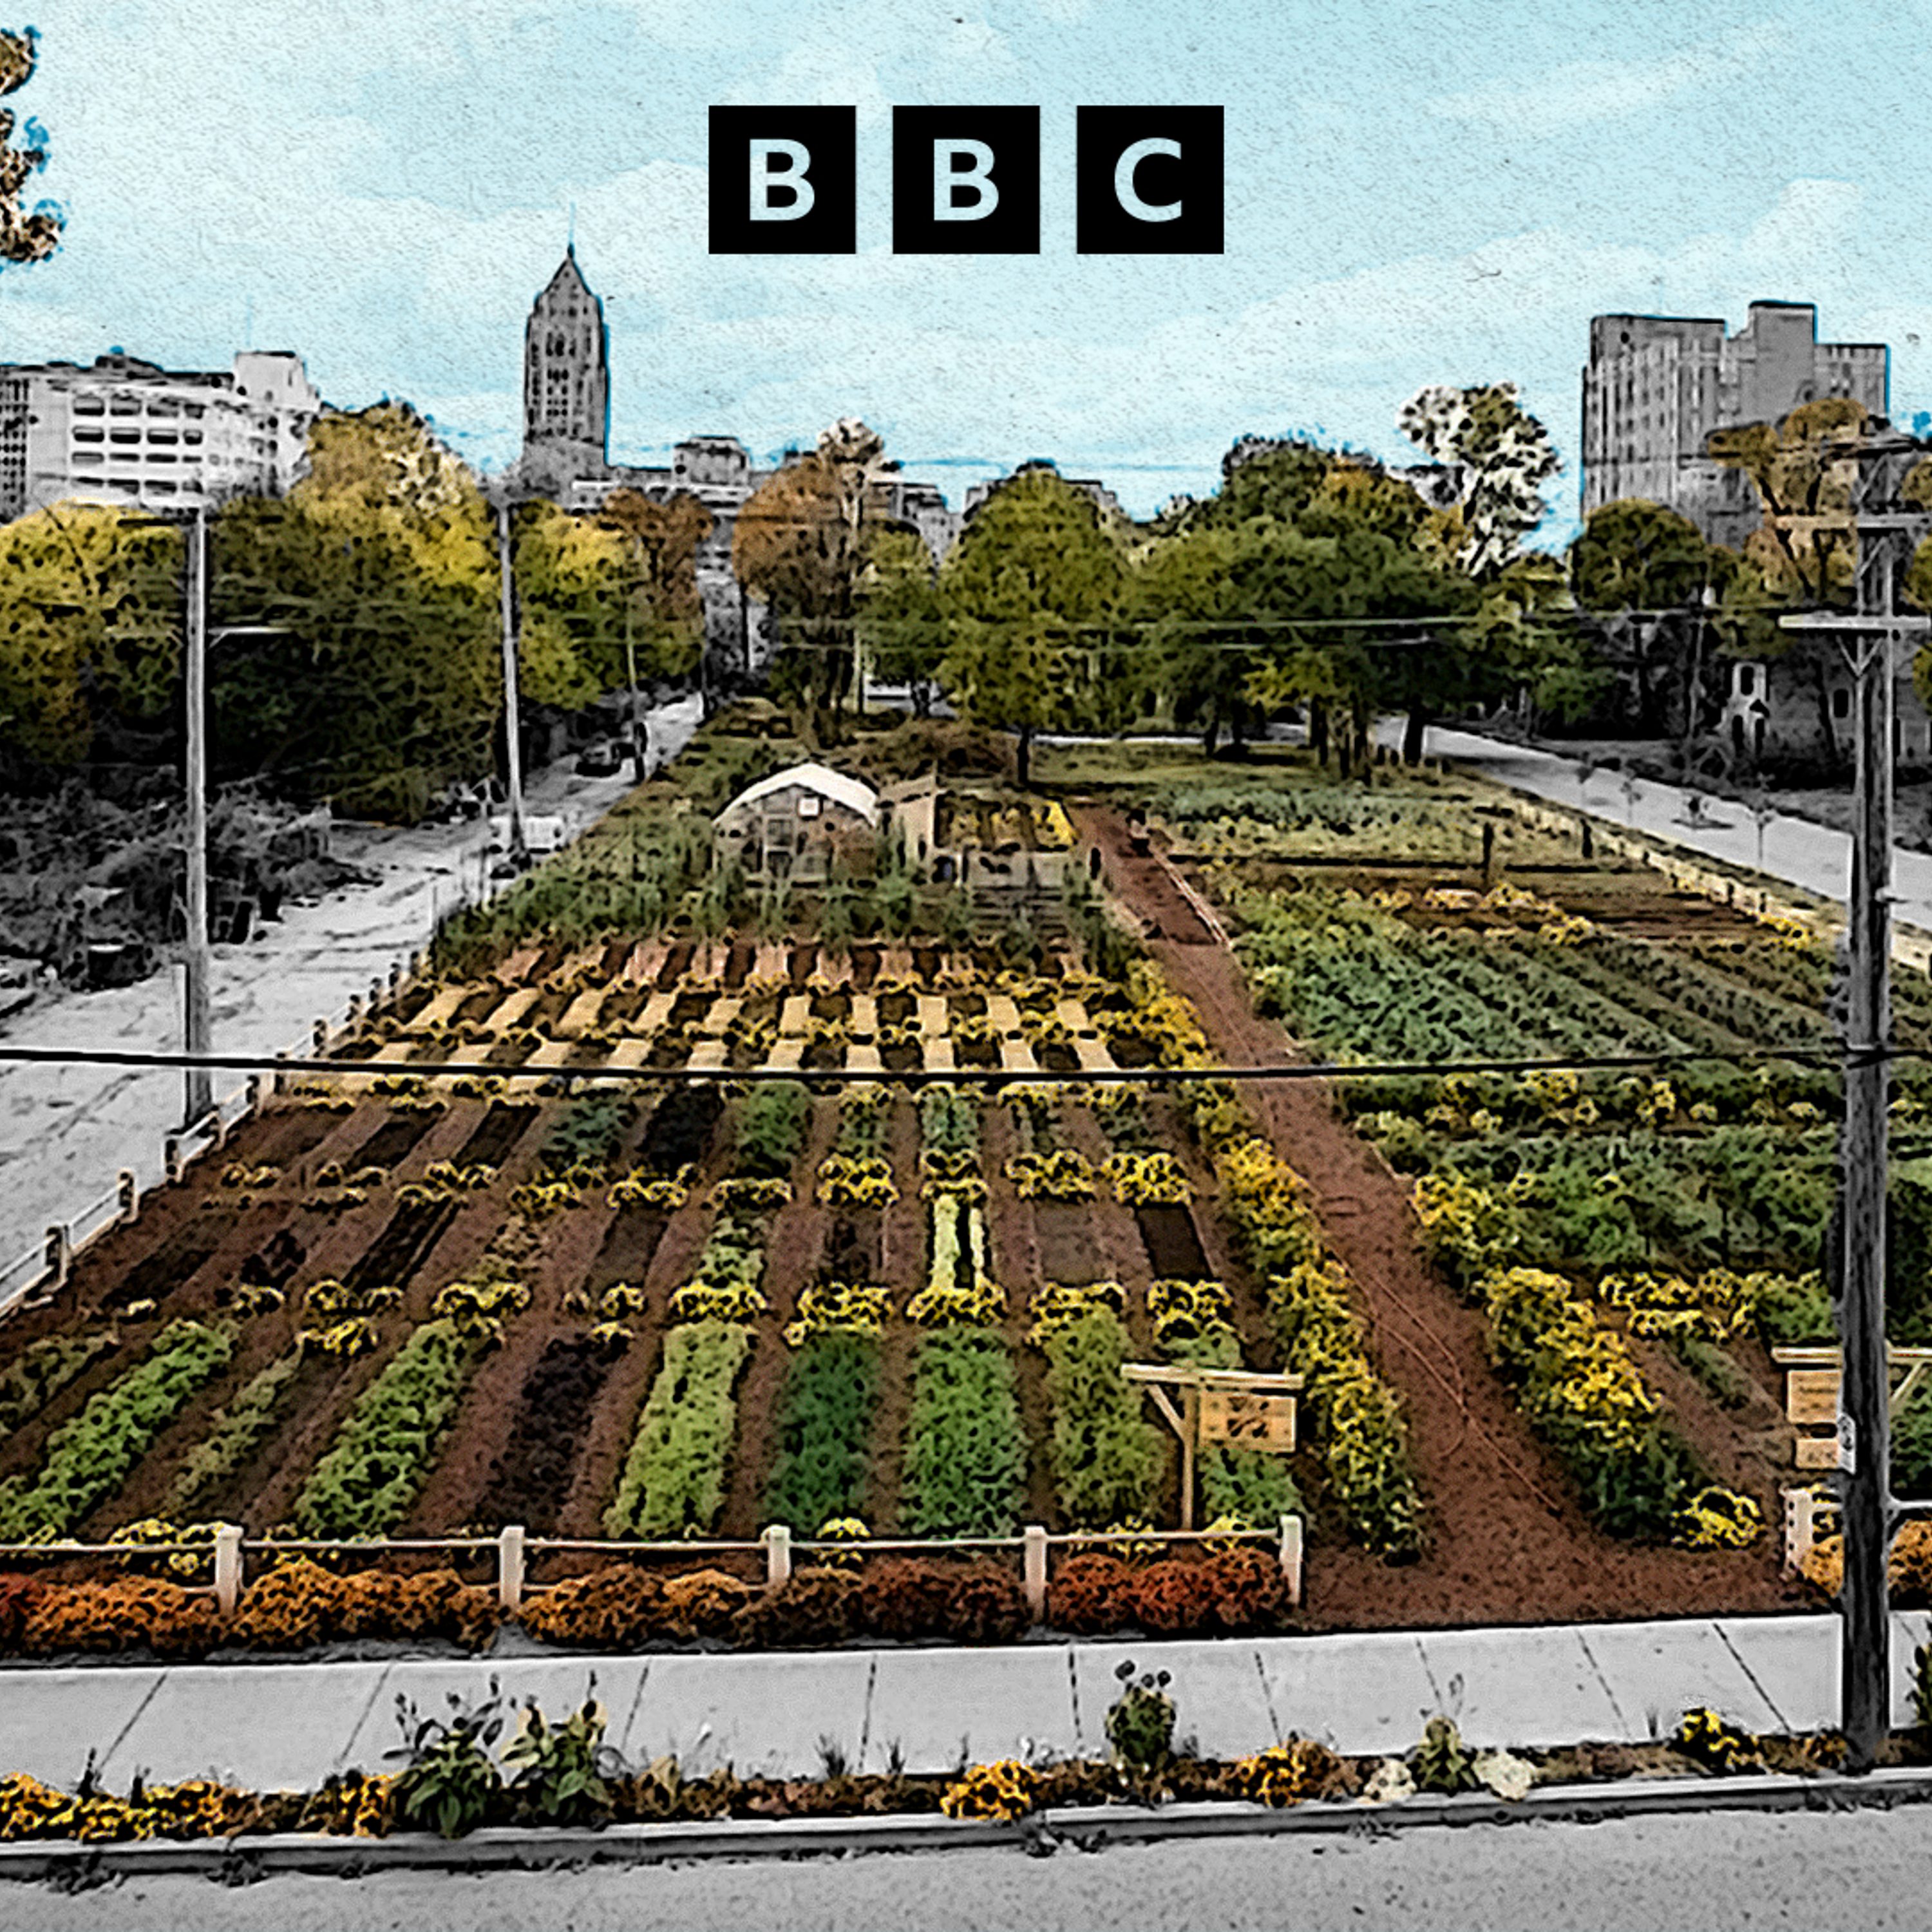 Detroit's urban farmers